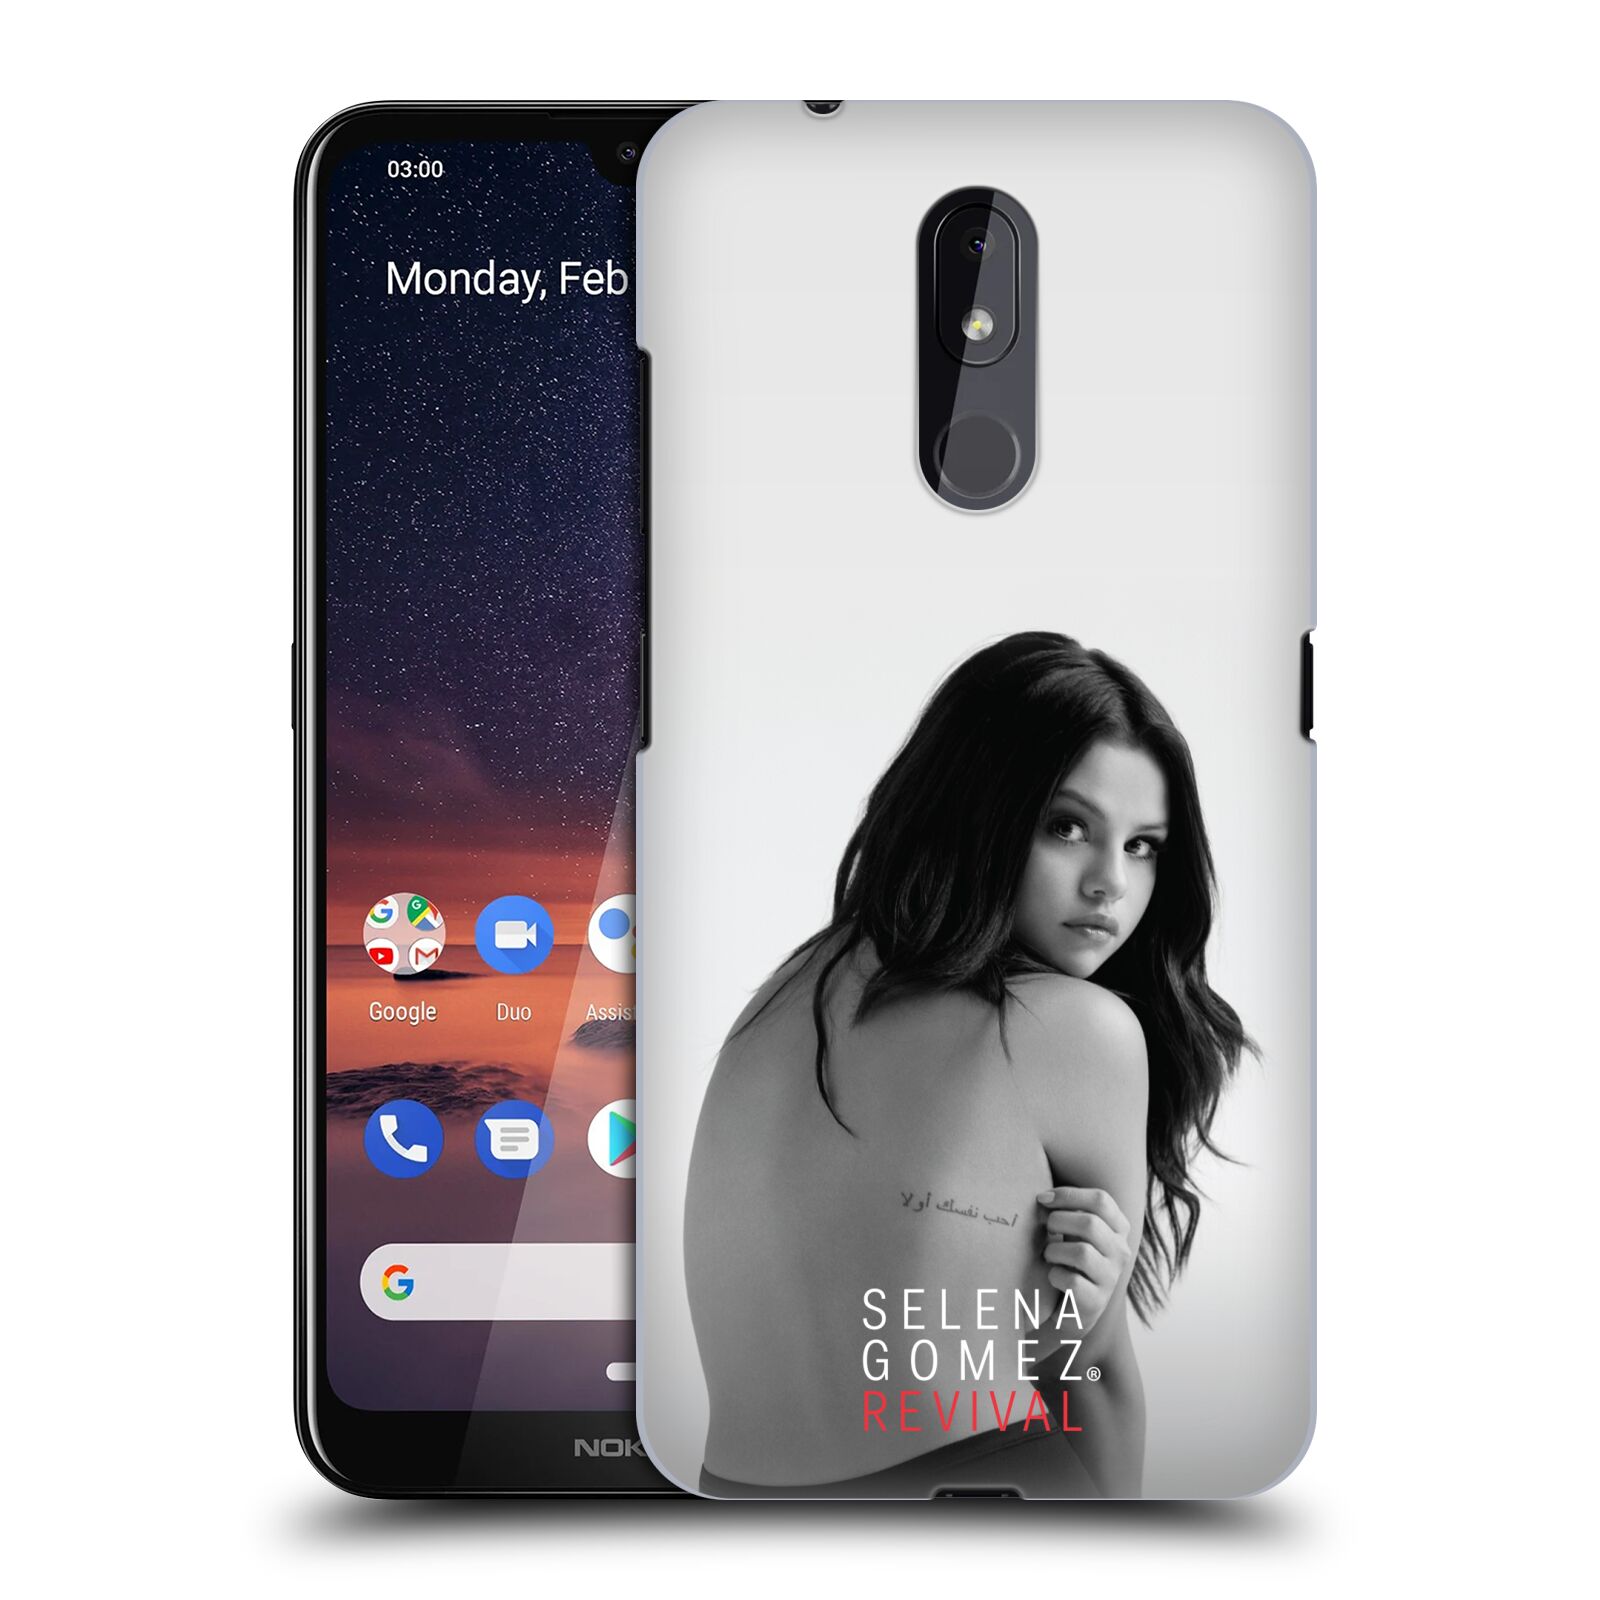 Pouzdro na mobil Nokia 3.2 - HEAD CASE - Zpěvačka Selena Gomez foto Revival zadní strana